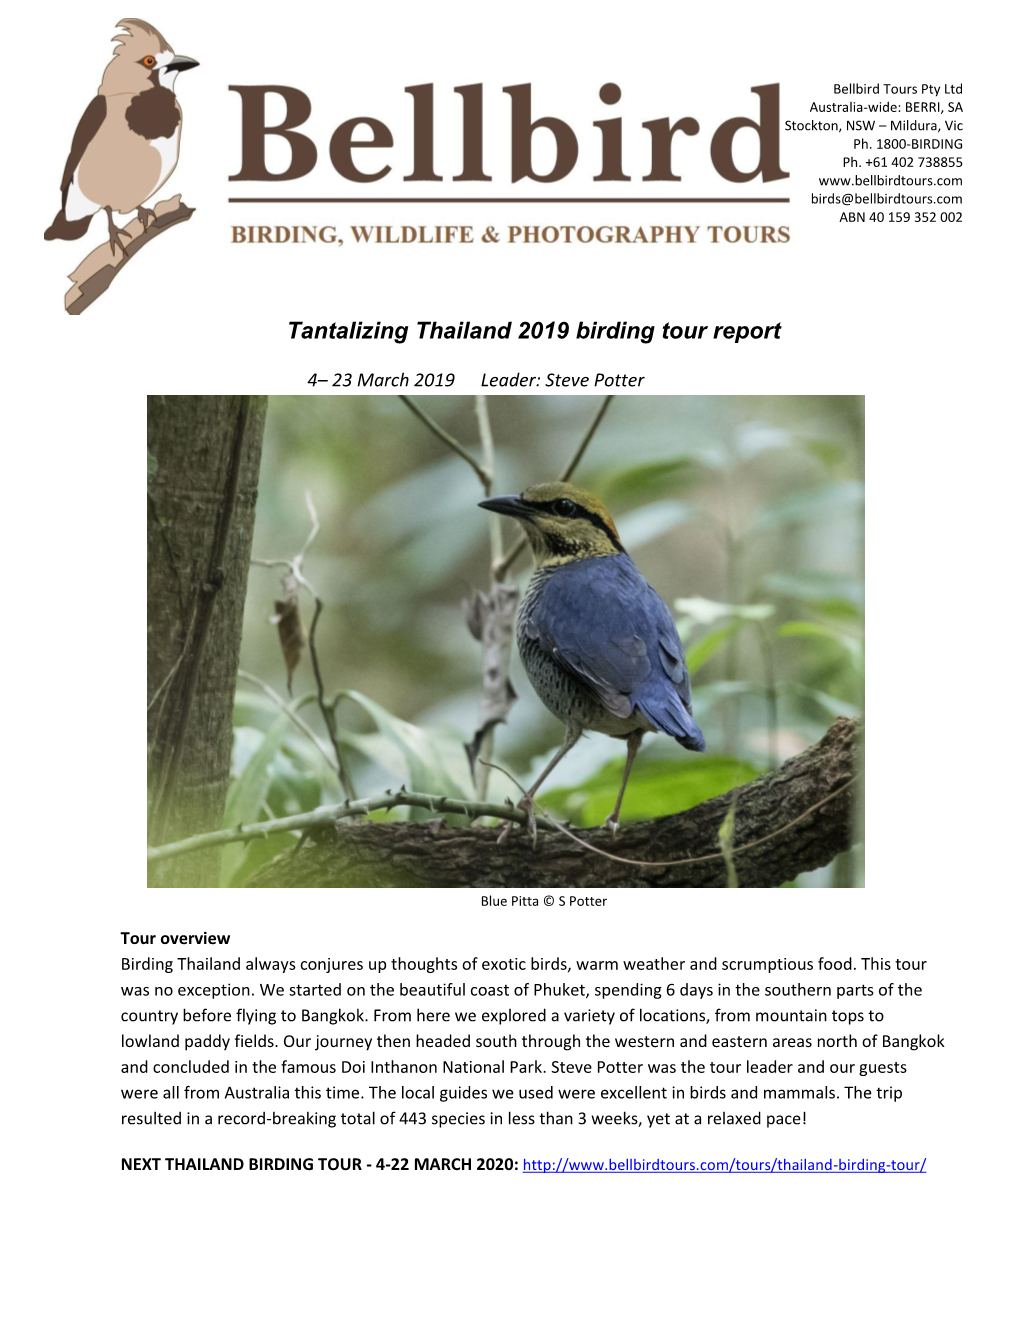 Bellbird Birding Tours